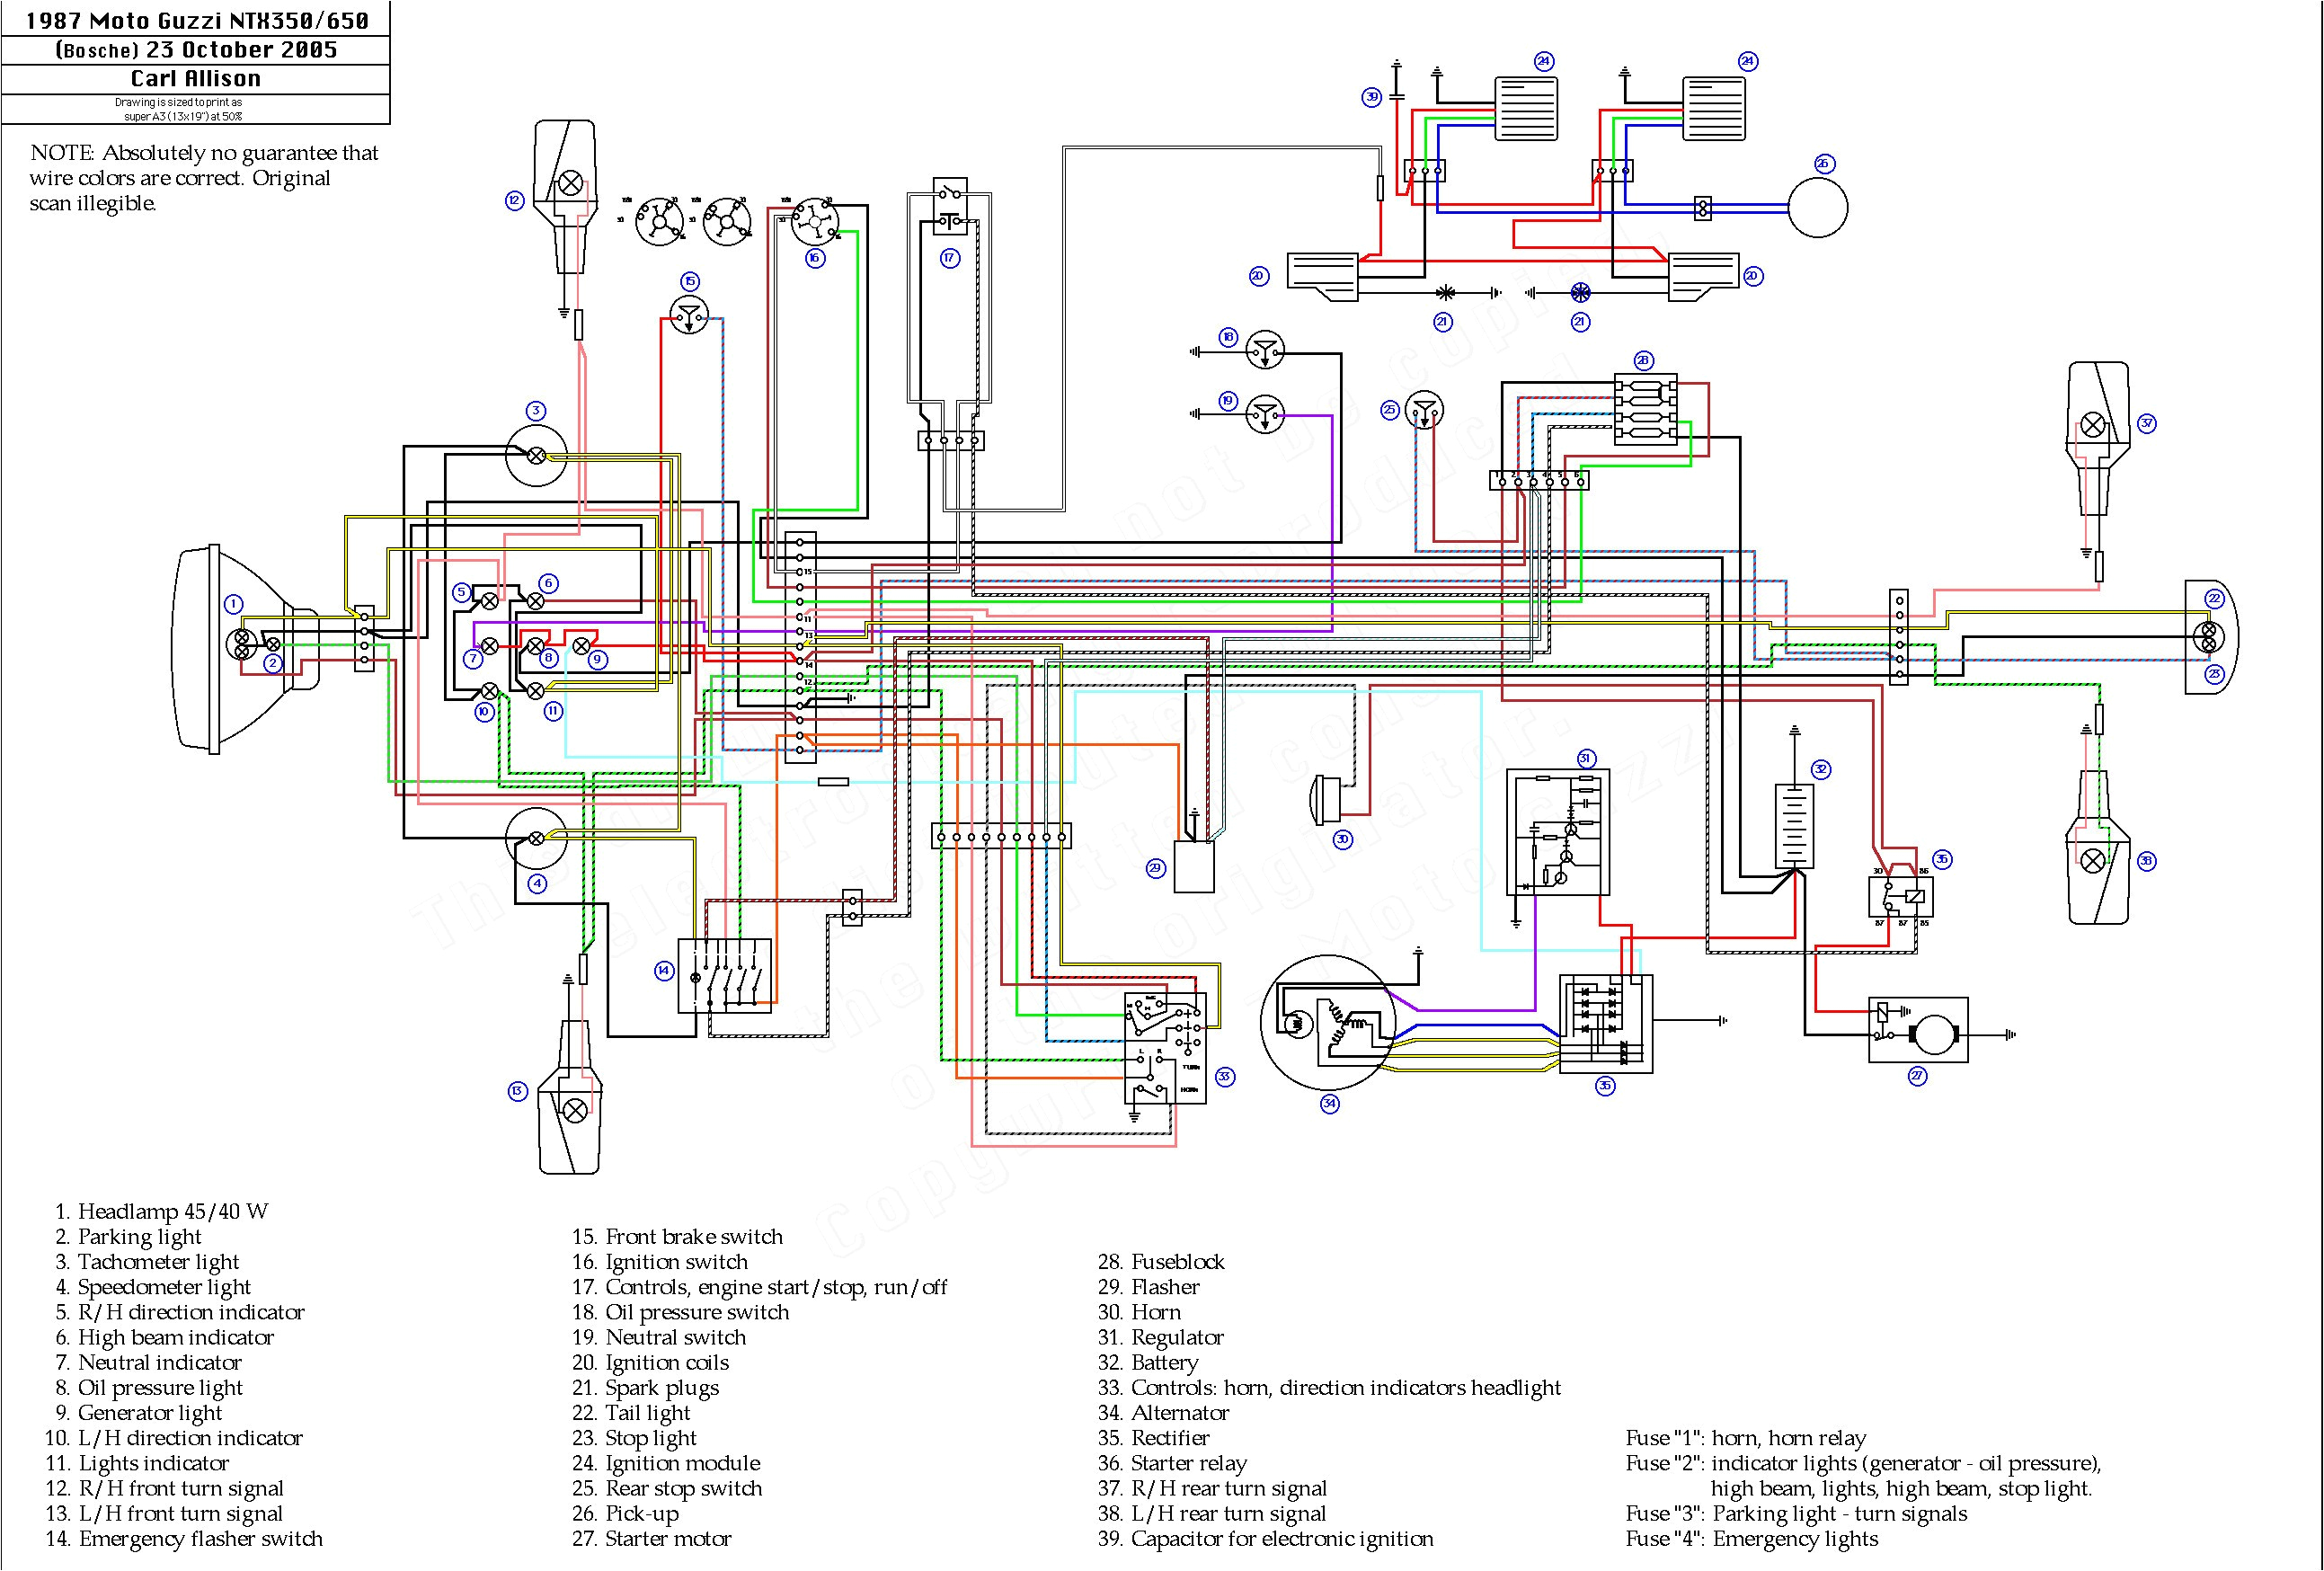 1972 yamaha 400 wiring diagram wiring diagram show 1974 yamaha mx 400 wiring diagram wiring diagram